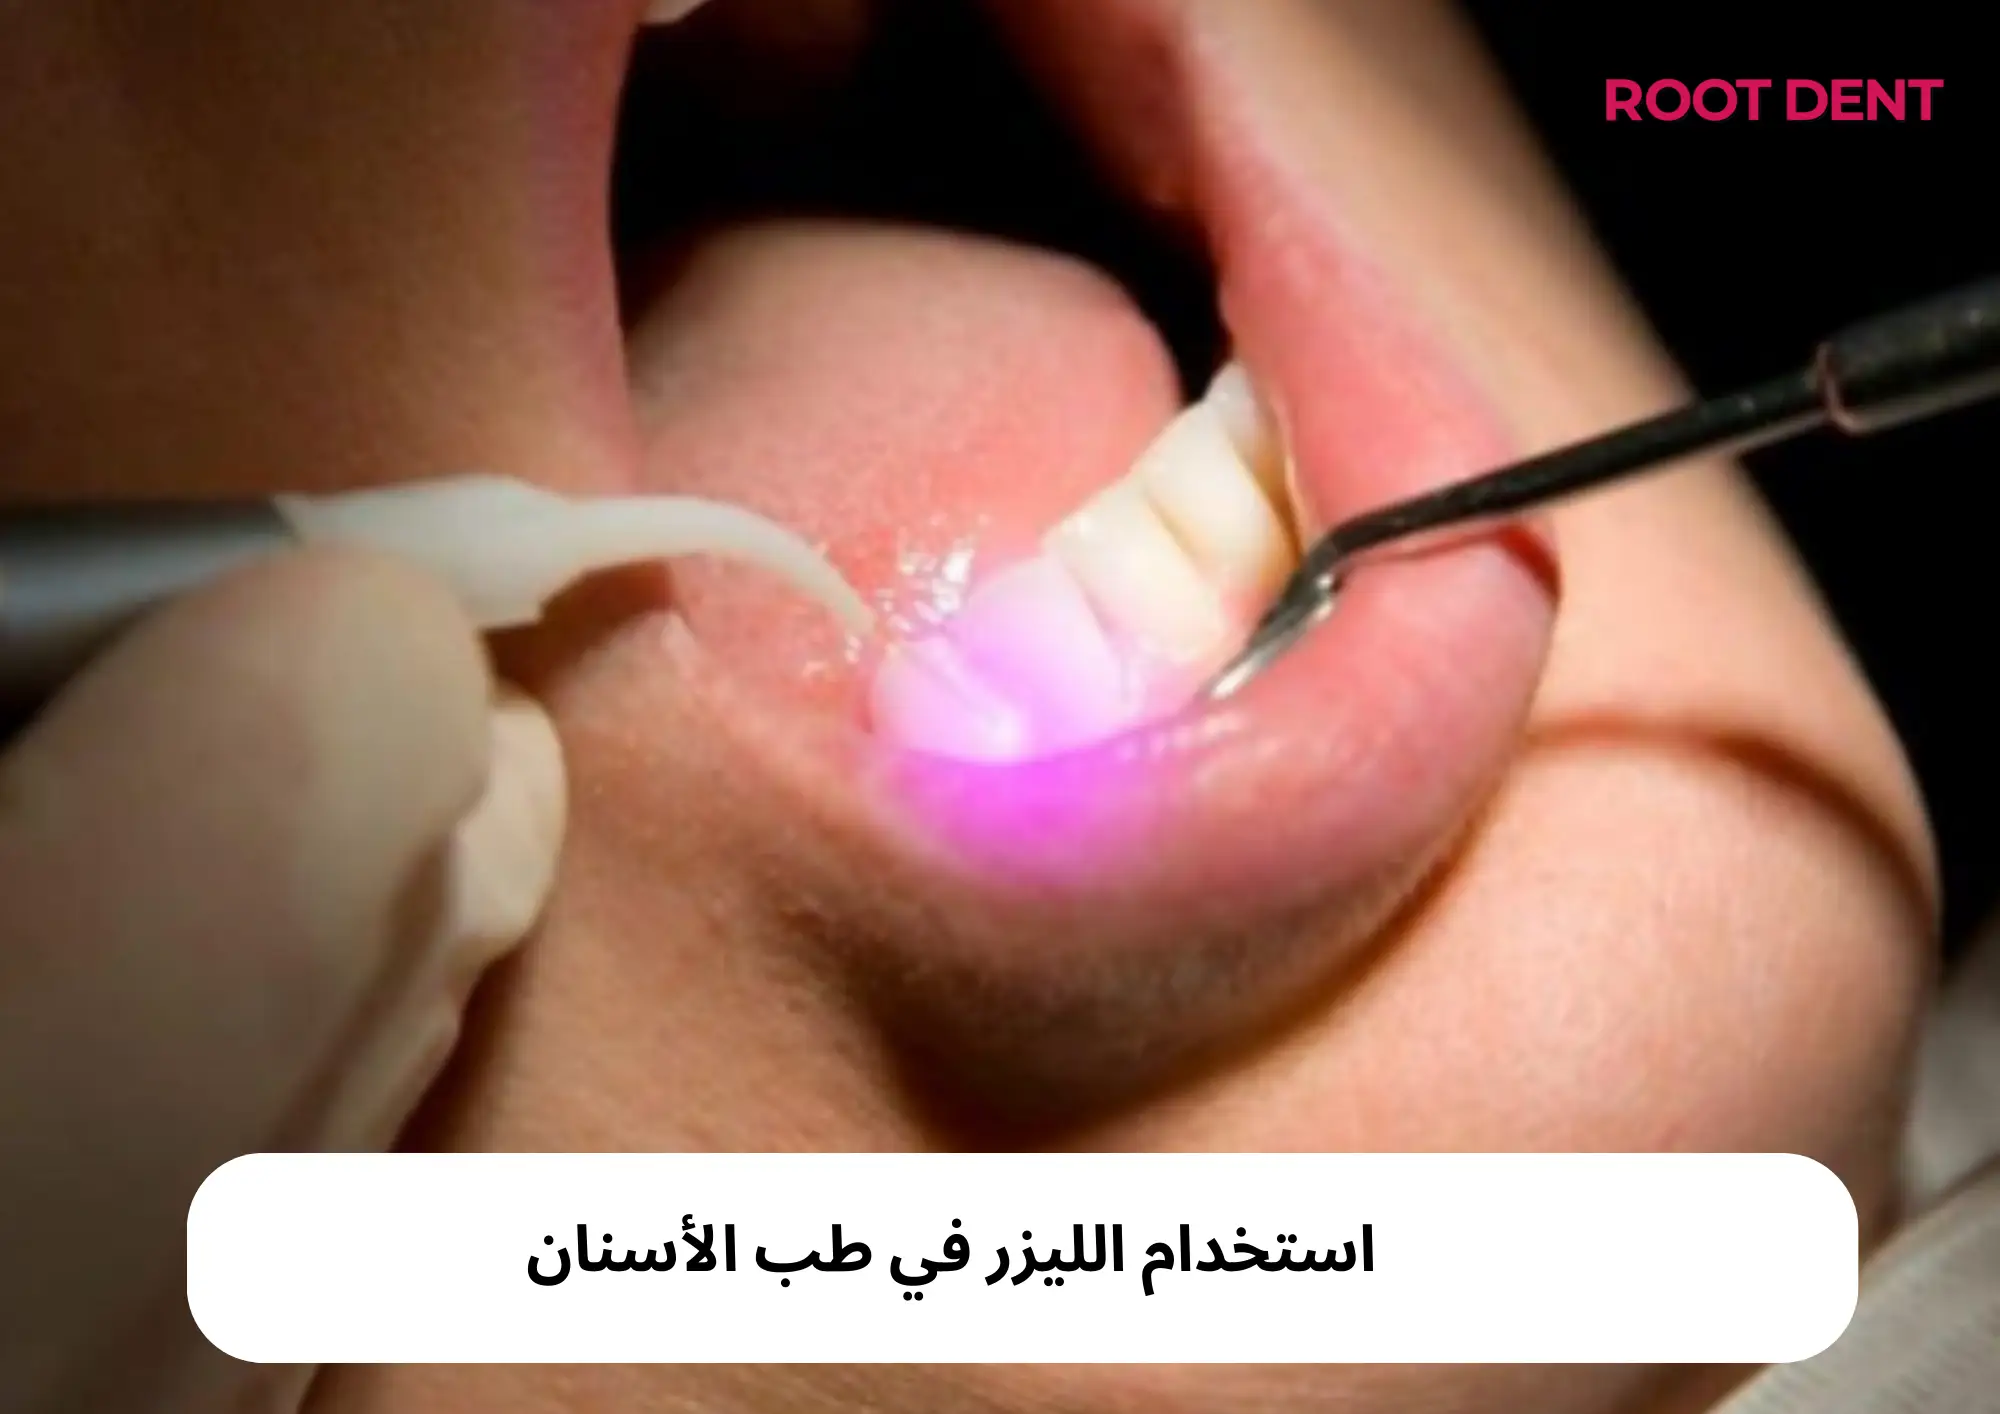 استخدام الليزر في طب الأسنان